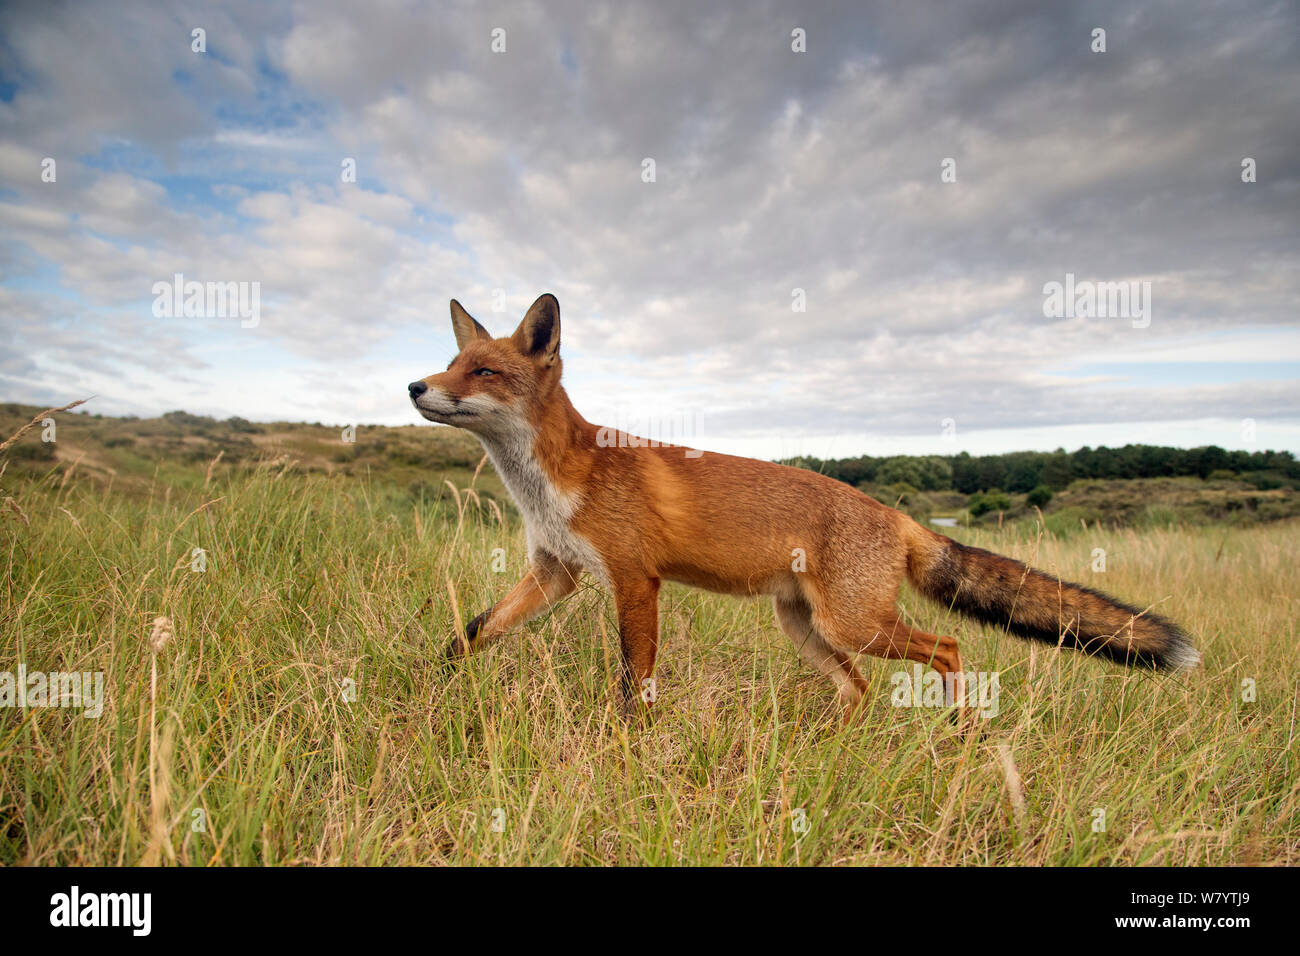 European red fox (Vulpes vulpes crucigera) odeur de l'air dans l'habitat de dunes de sable, aux Pays-Bas. Août Banque D'Images